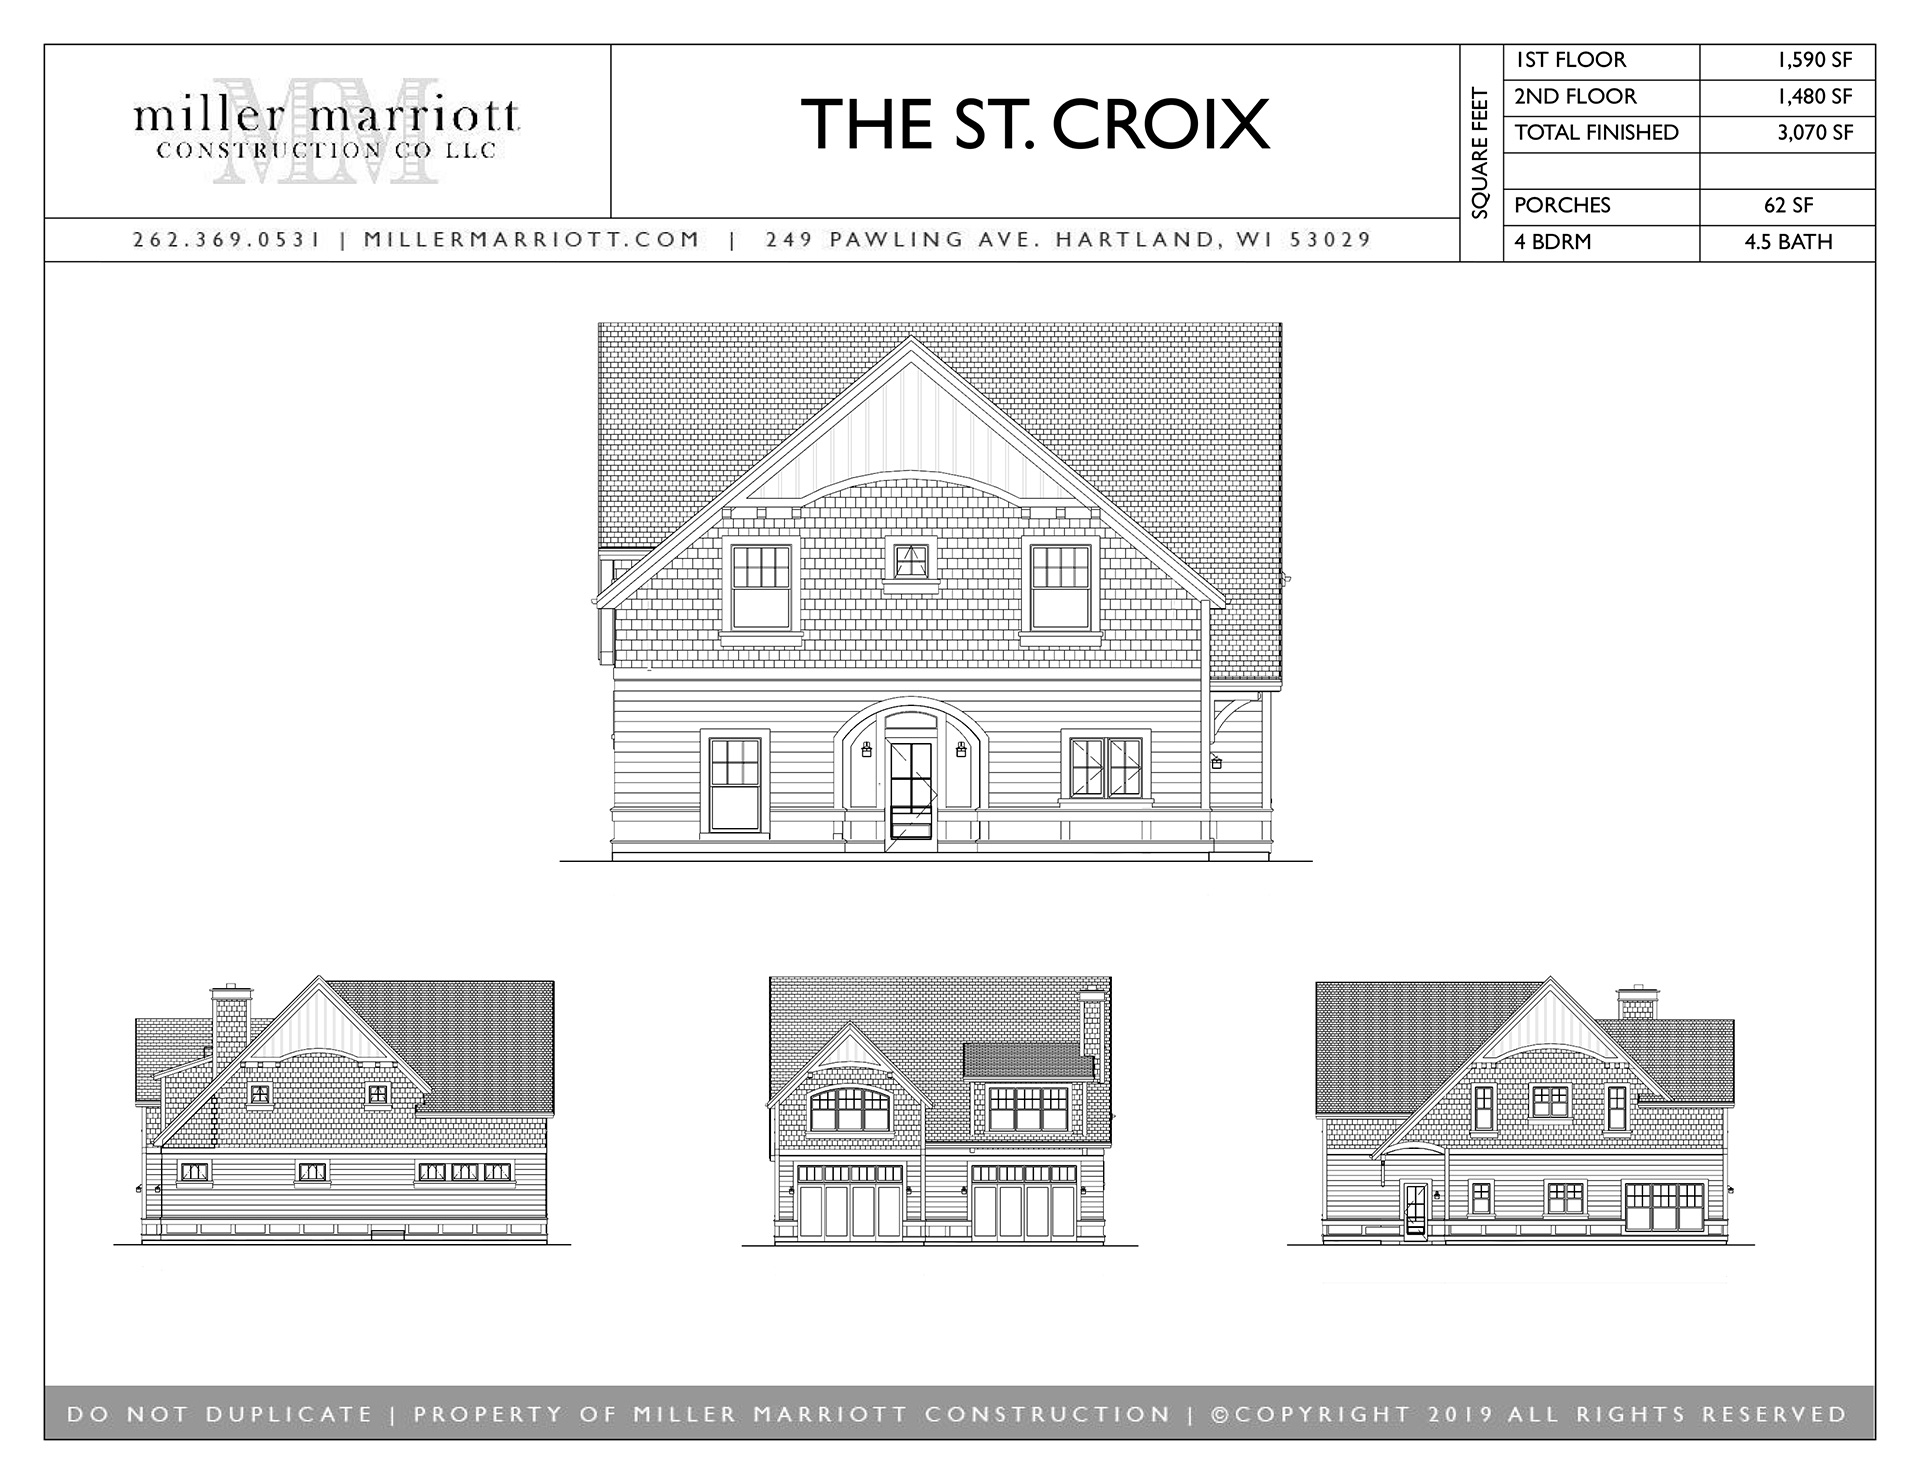 The St. Croix exterior plan